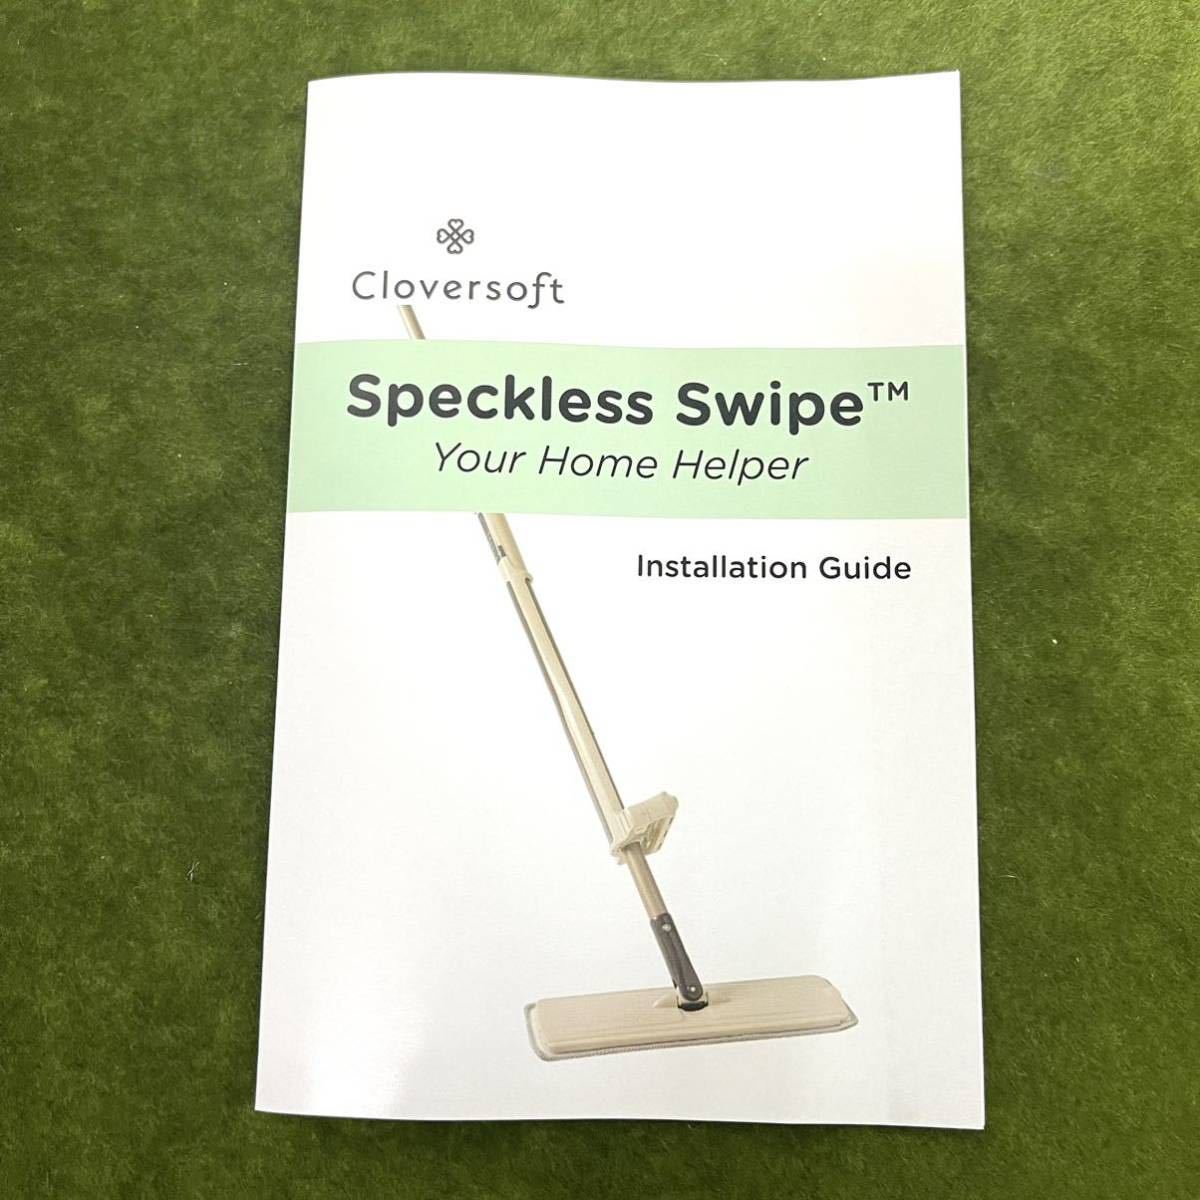 16** новый товар не использовался товар . принадлежности для уборки Cloversoft Speckless Swipe/ пол стеклоочиститель новый товар для замены швабра есть **